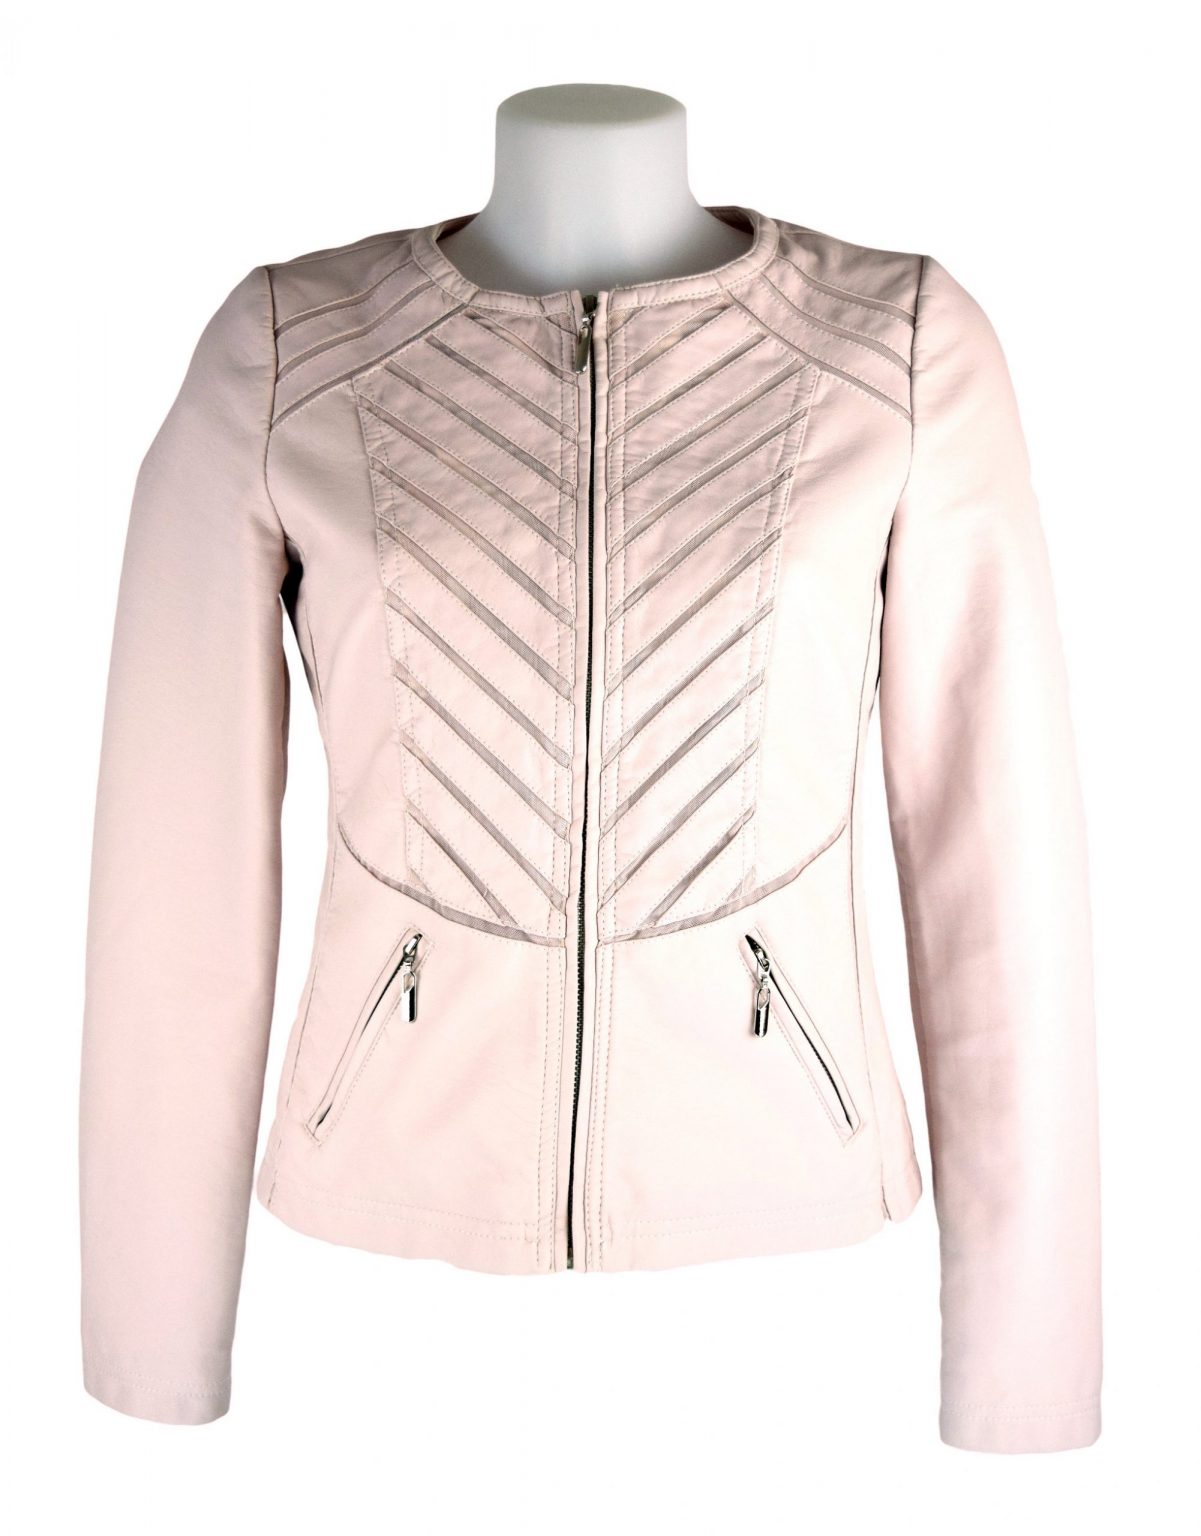 Escandelle Paris Round Neck Faux Leather Light Pink Jacket - Fashion ...